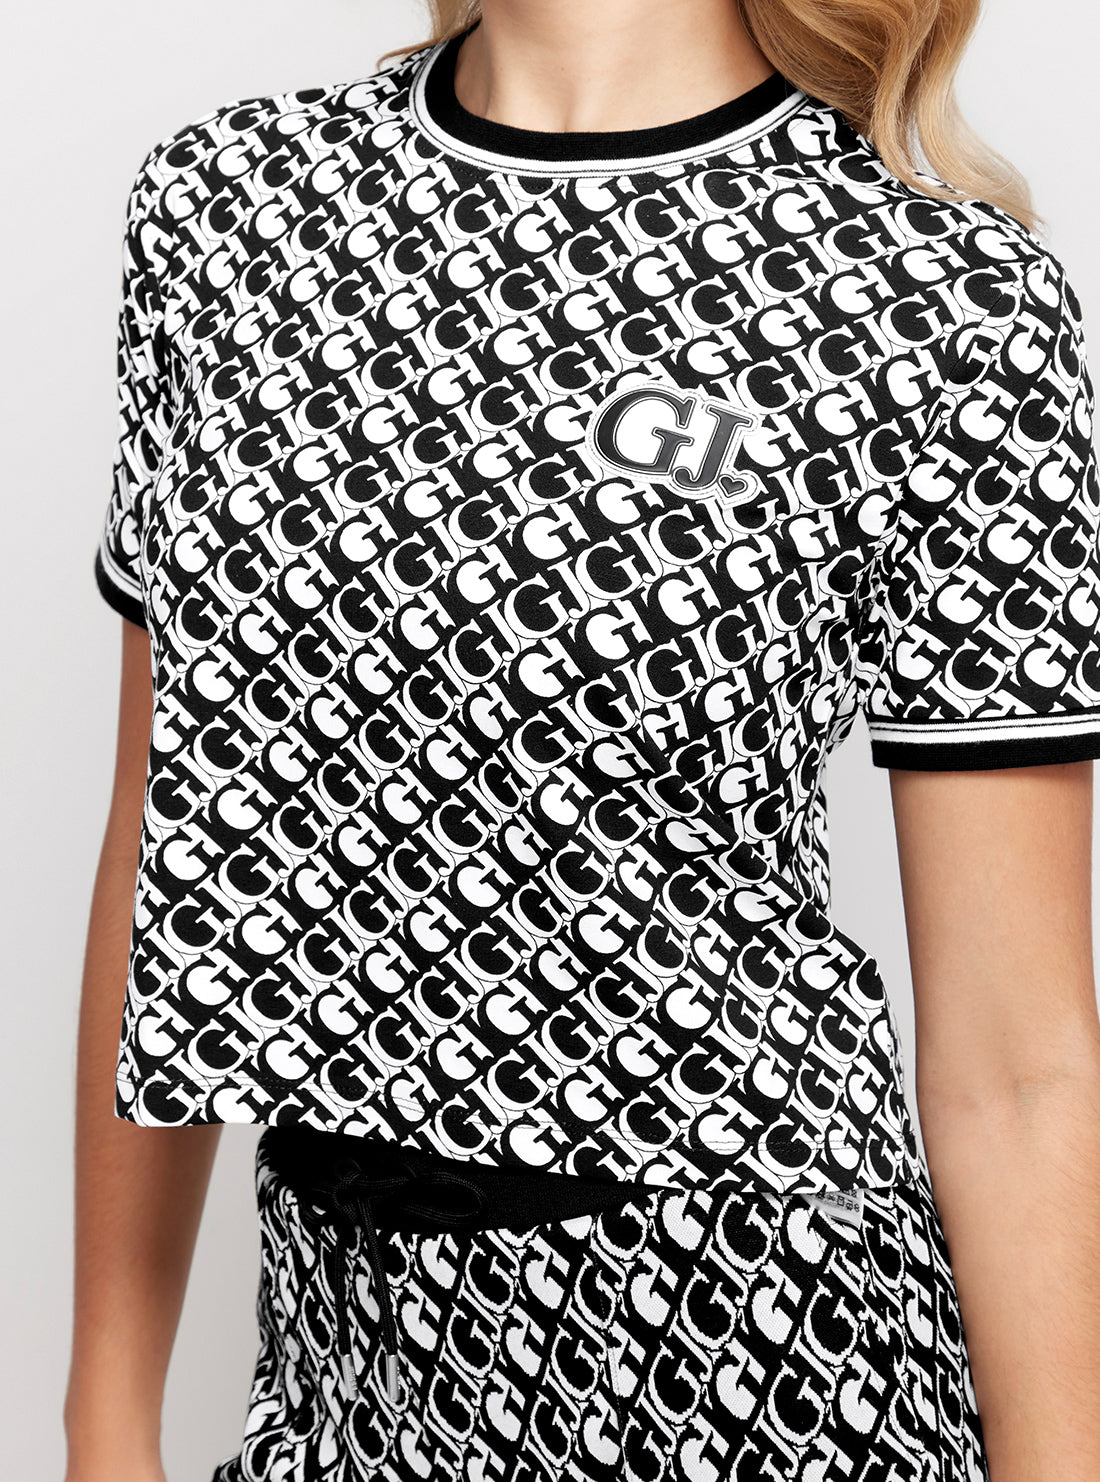 GUESS Black White Logomania Cropped T-Shirt detail view